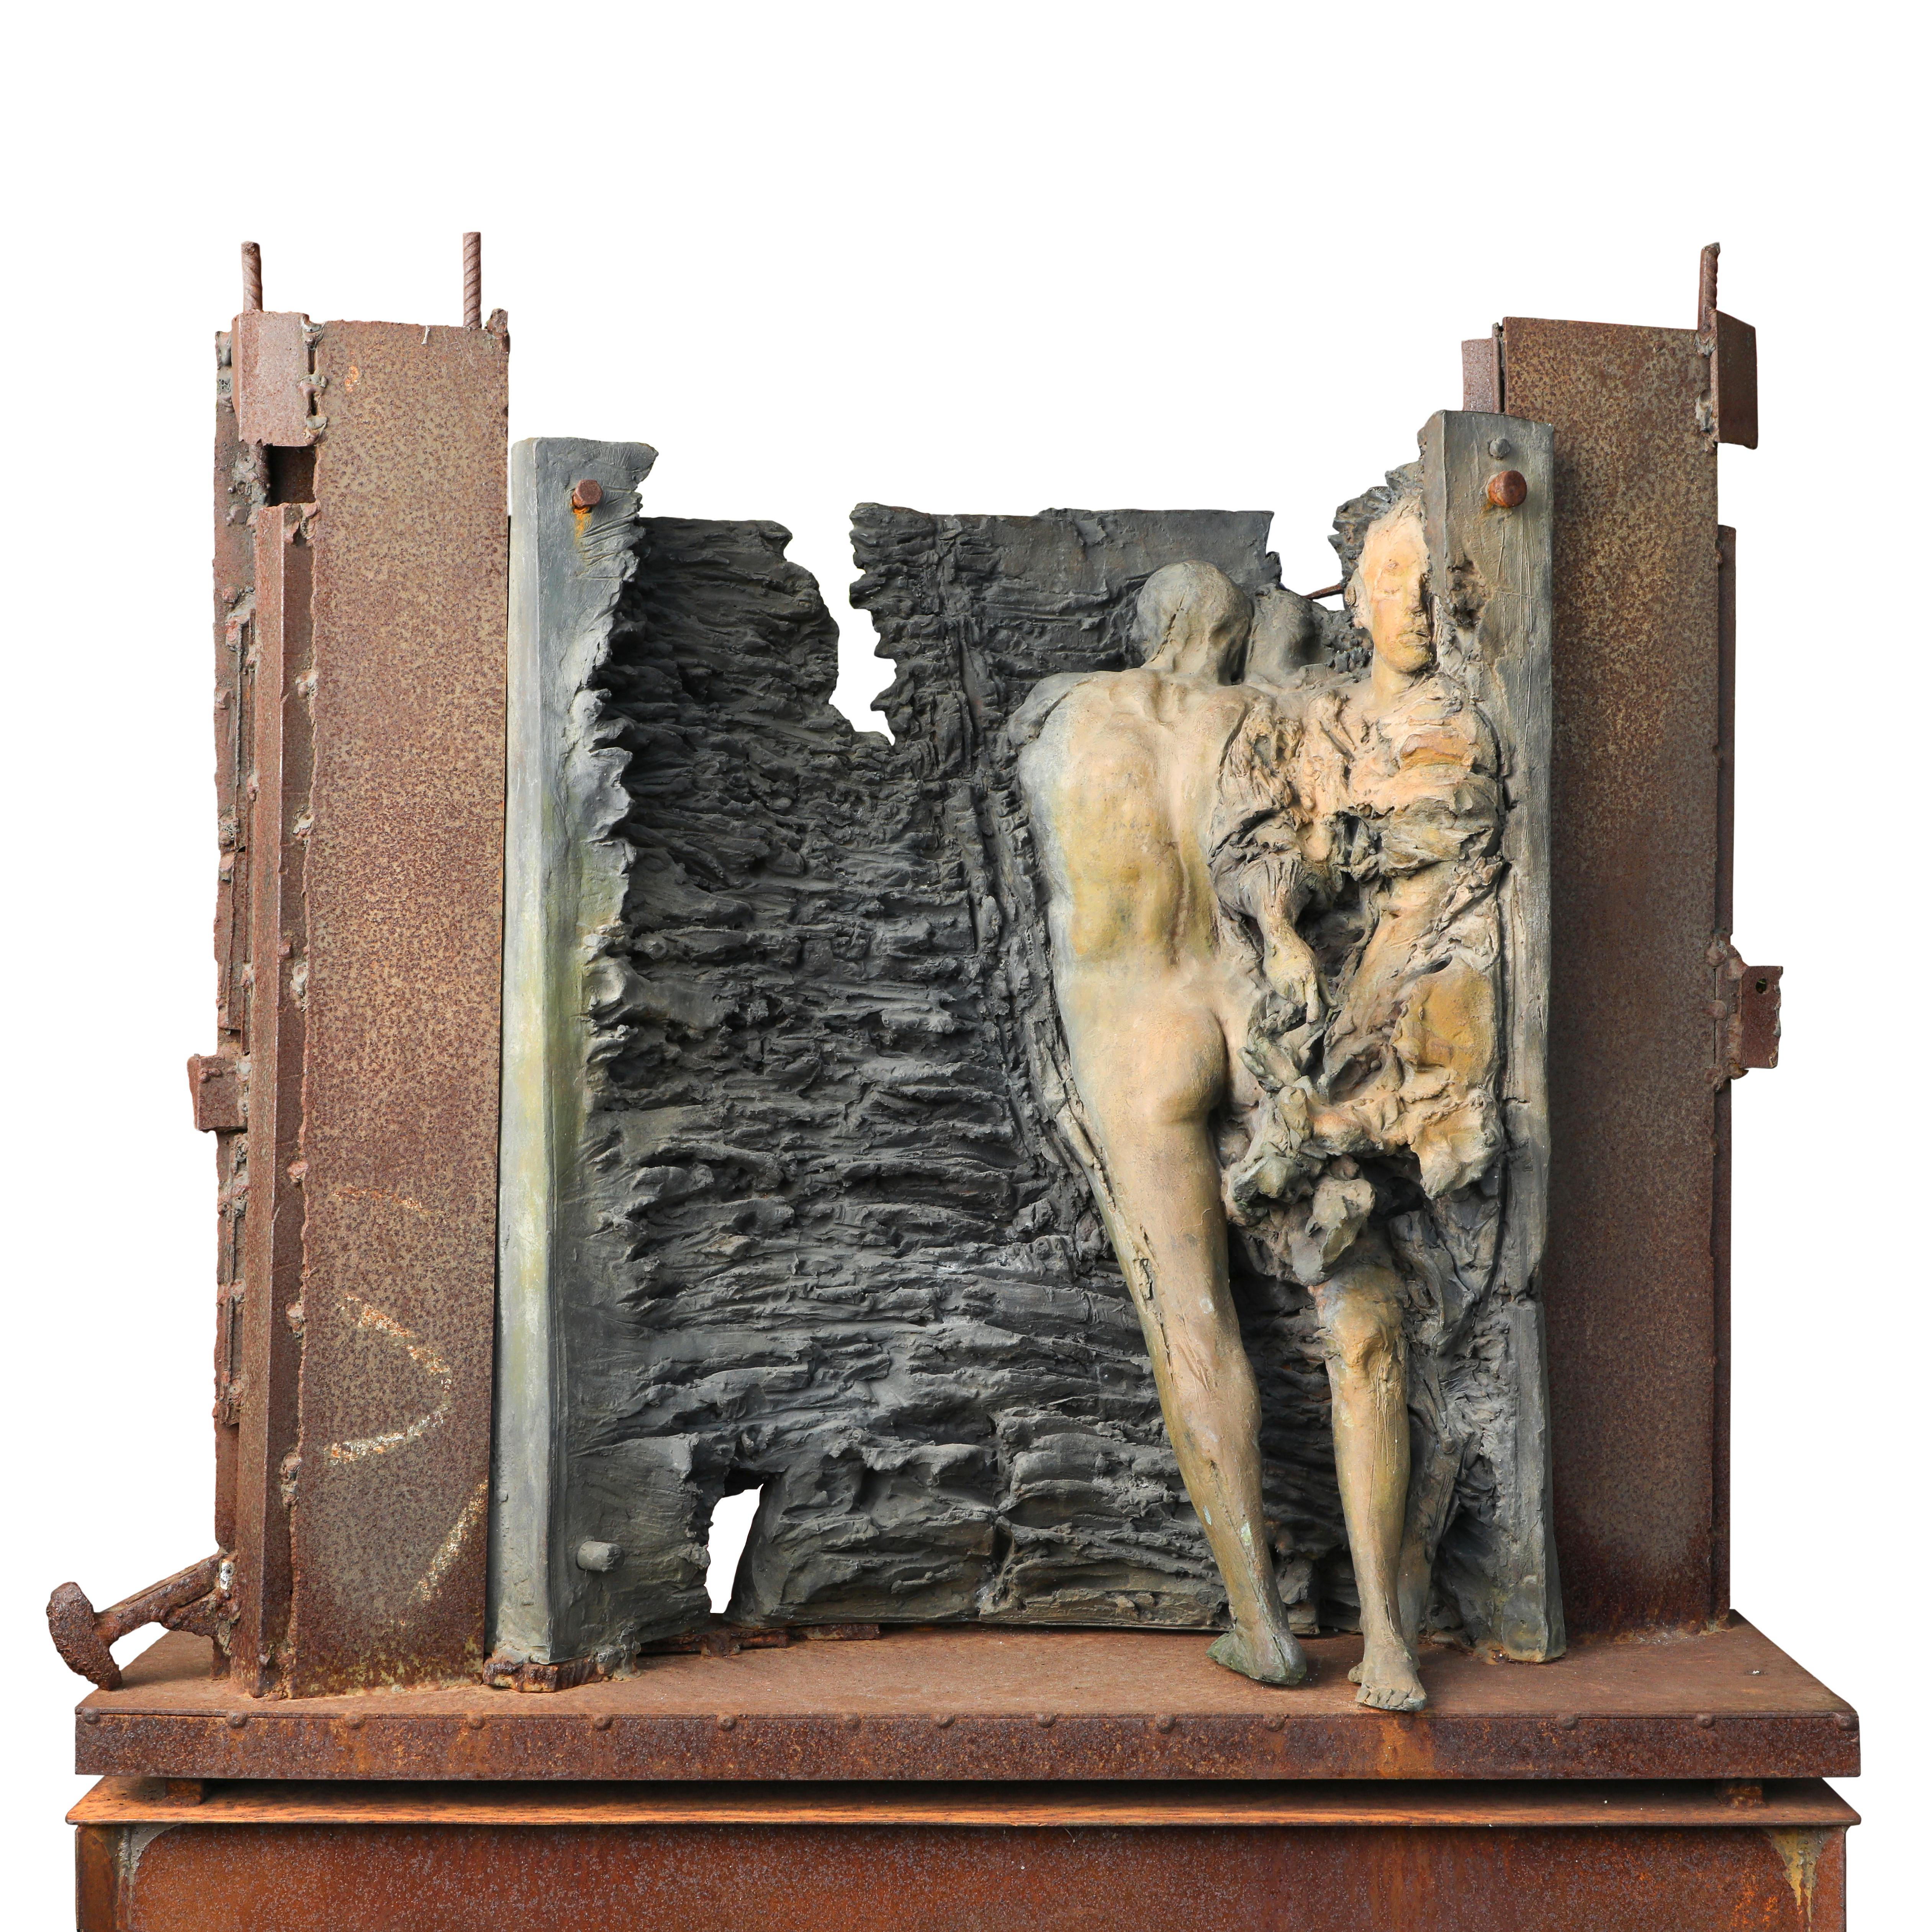 Hugo Rivas Figurative Sculpture - Sull'abisso dell'eternita, 2011